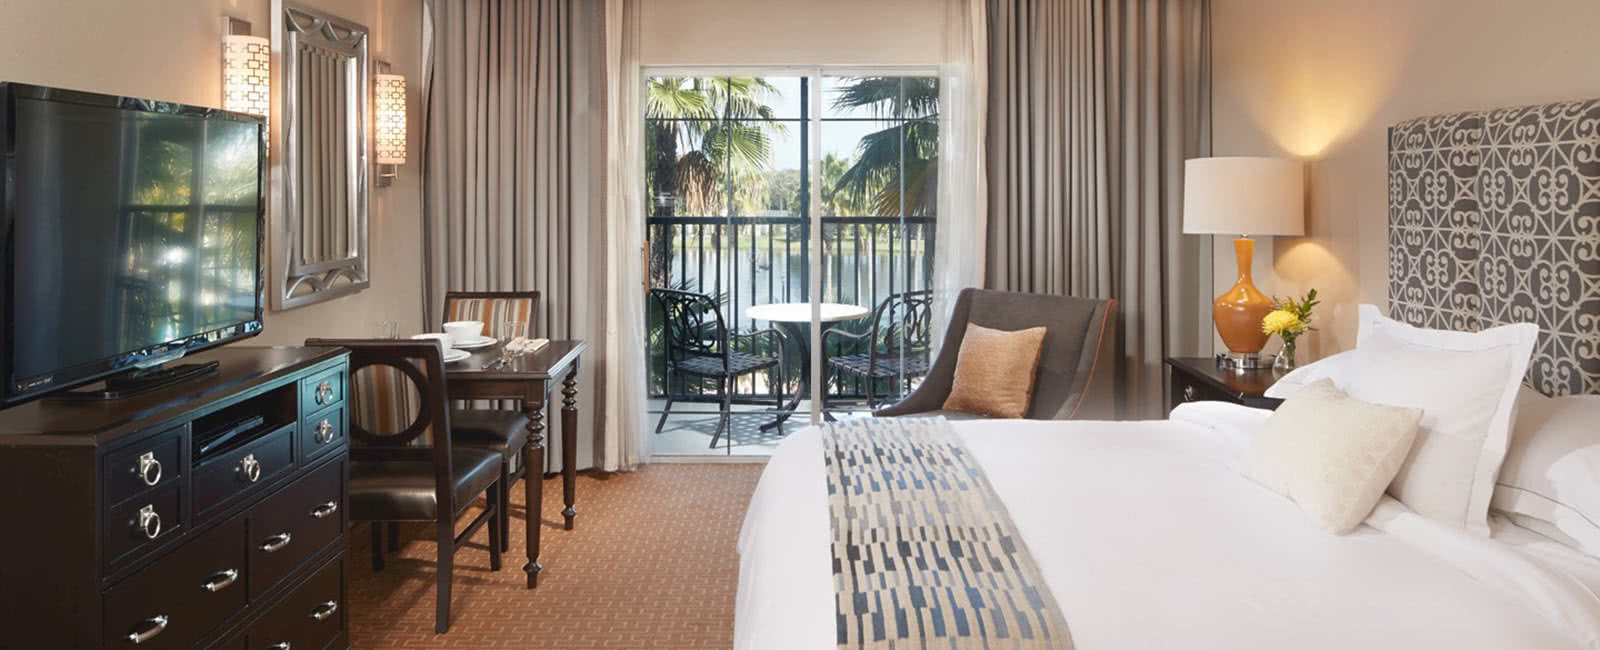 Bedroom at Hilton Grand Vacations Club at Tuscany Village in Orlando, Florida